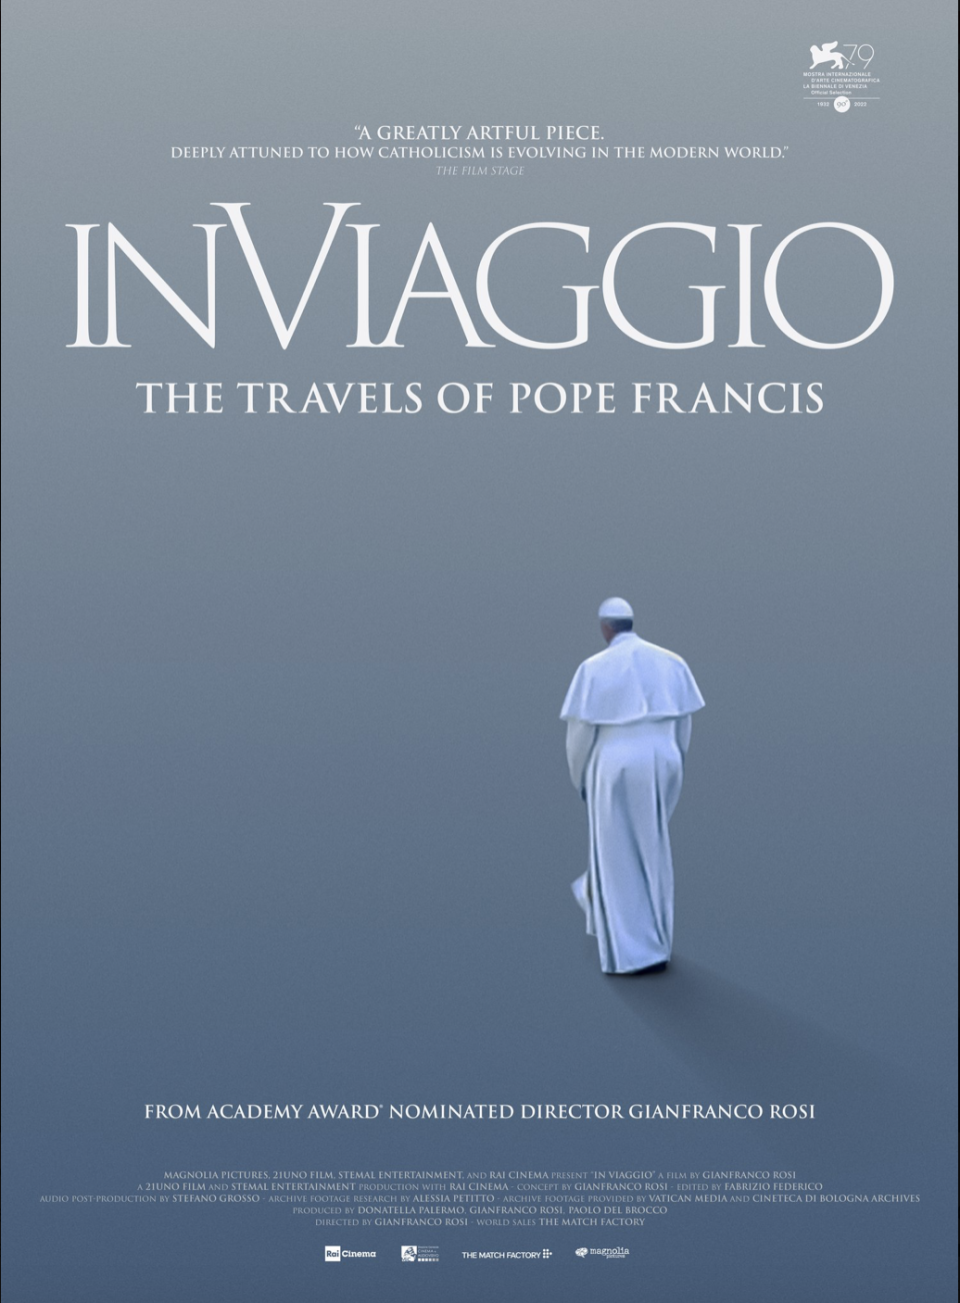 'In Viaggio' poster